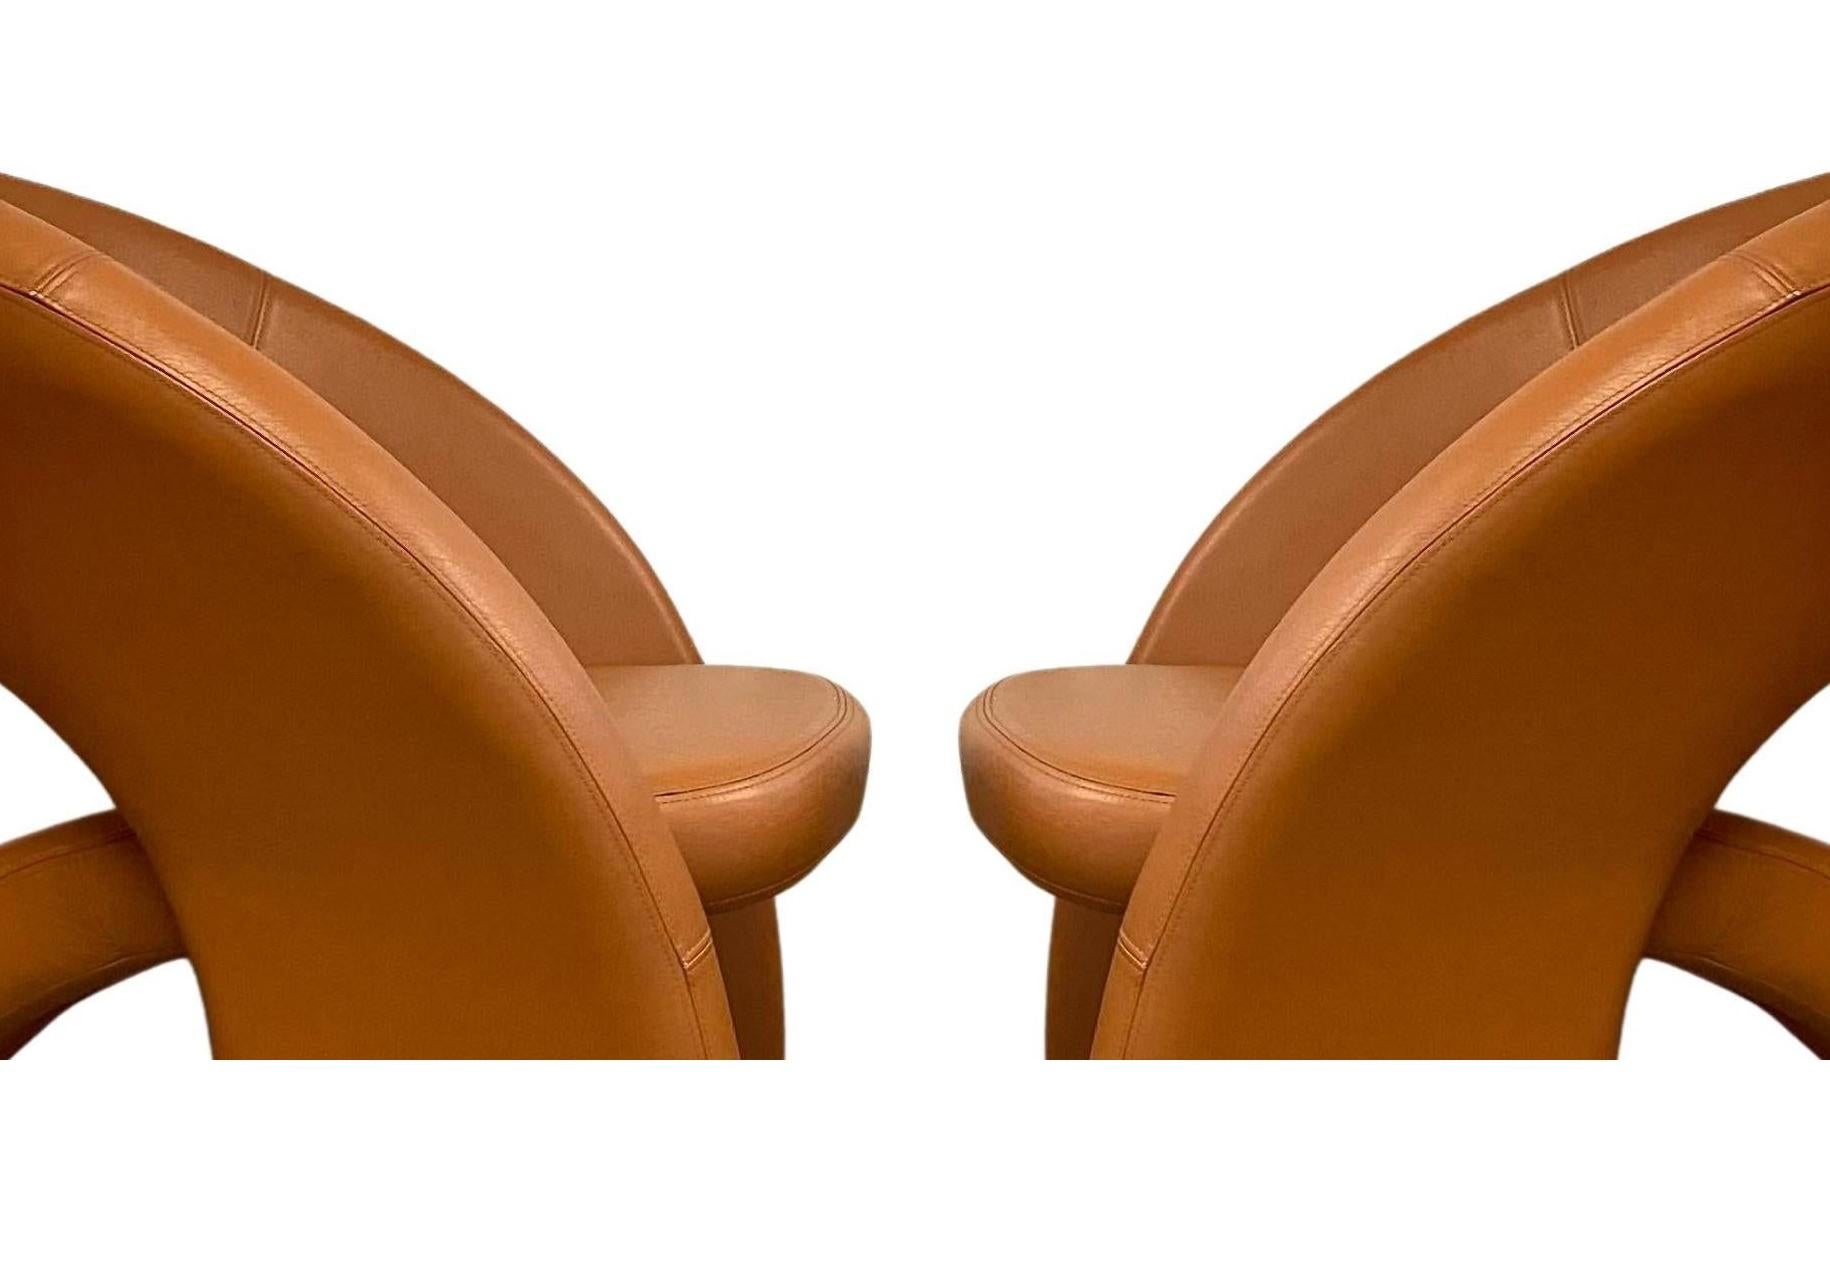 Des chaises Jaymar post-modernes étonnantes pour ceux qui recherchent l'extraordinaire. Sculpturales et confiantes, ces remarquables chaises sont de l'art moderne fonctionnel. Elles présentent un design dynamique avec une construction à trois pieds,